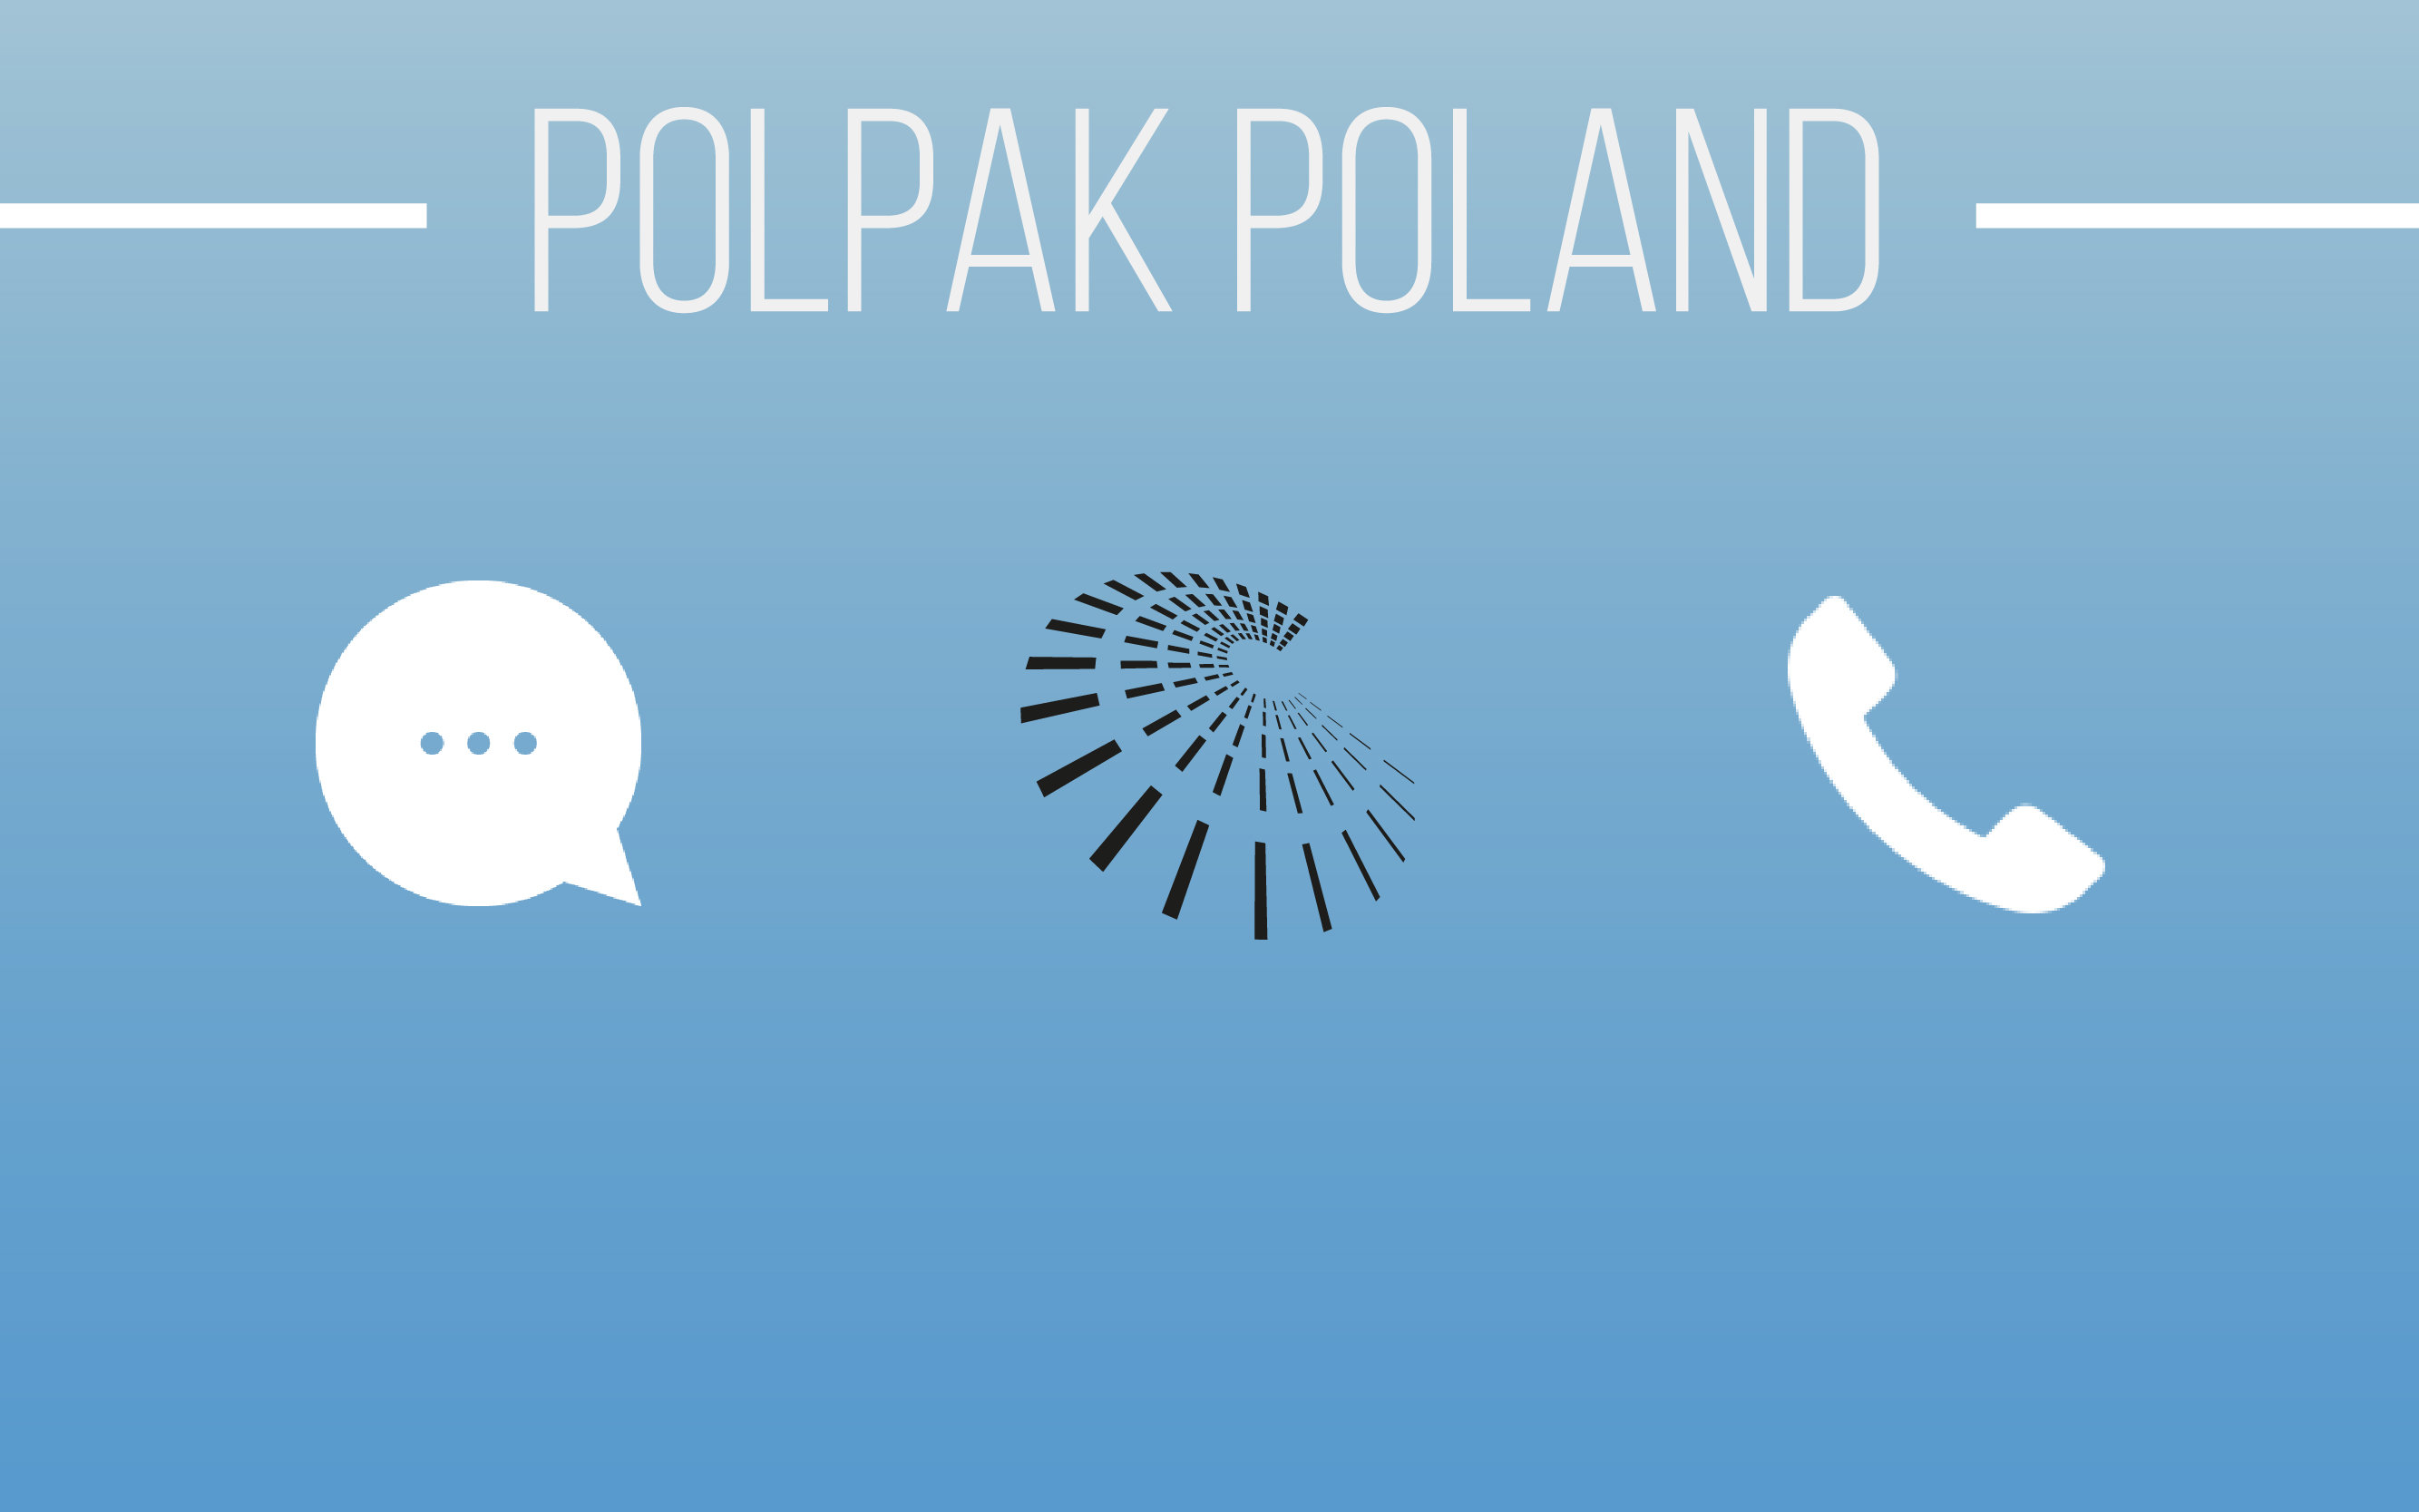 Polpak Poland